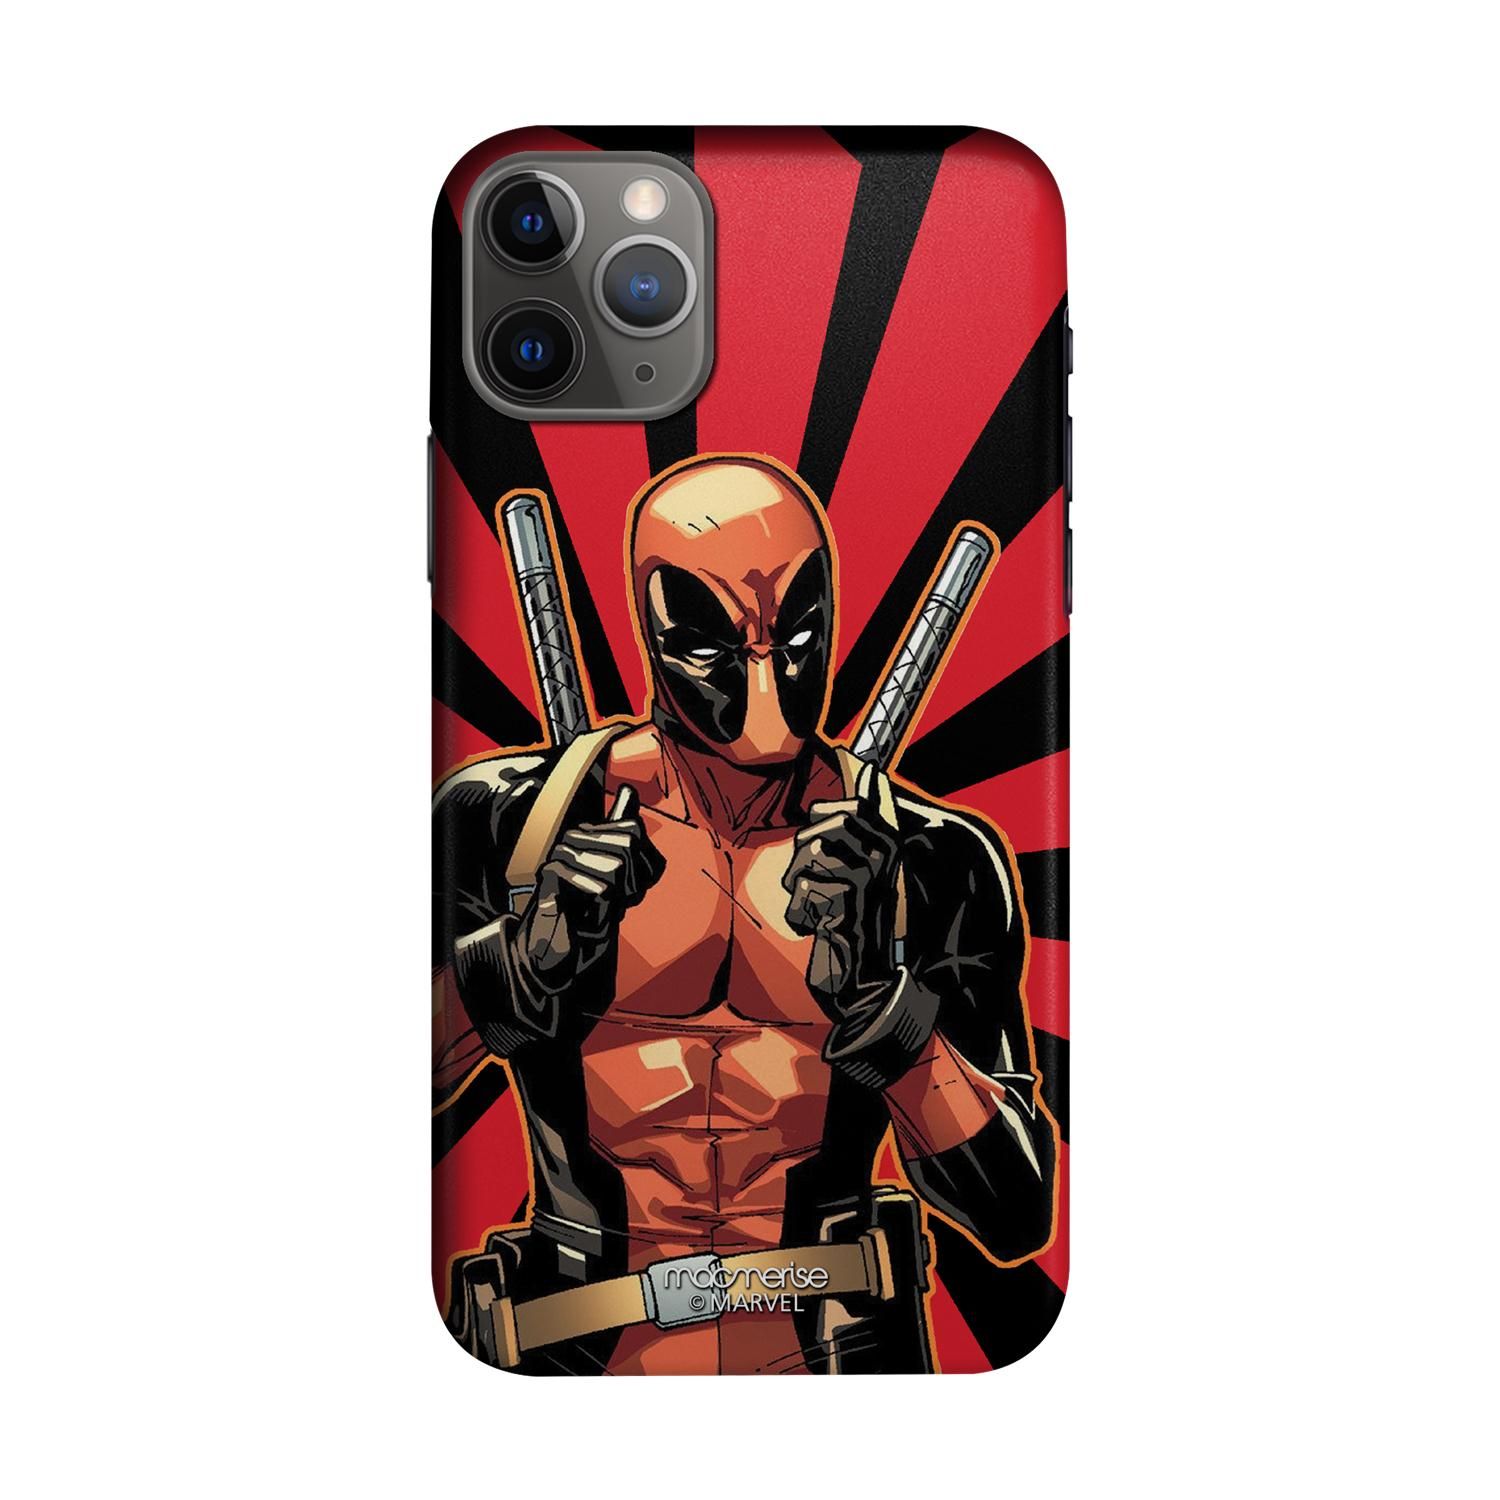 Smart Ass Deadpool - Sleek Phone Case for iPhone 11 Pro Max